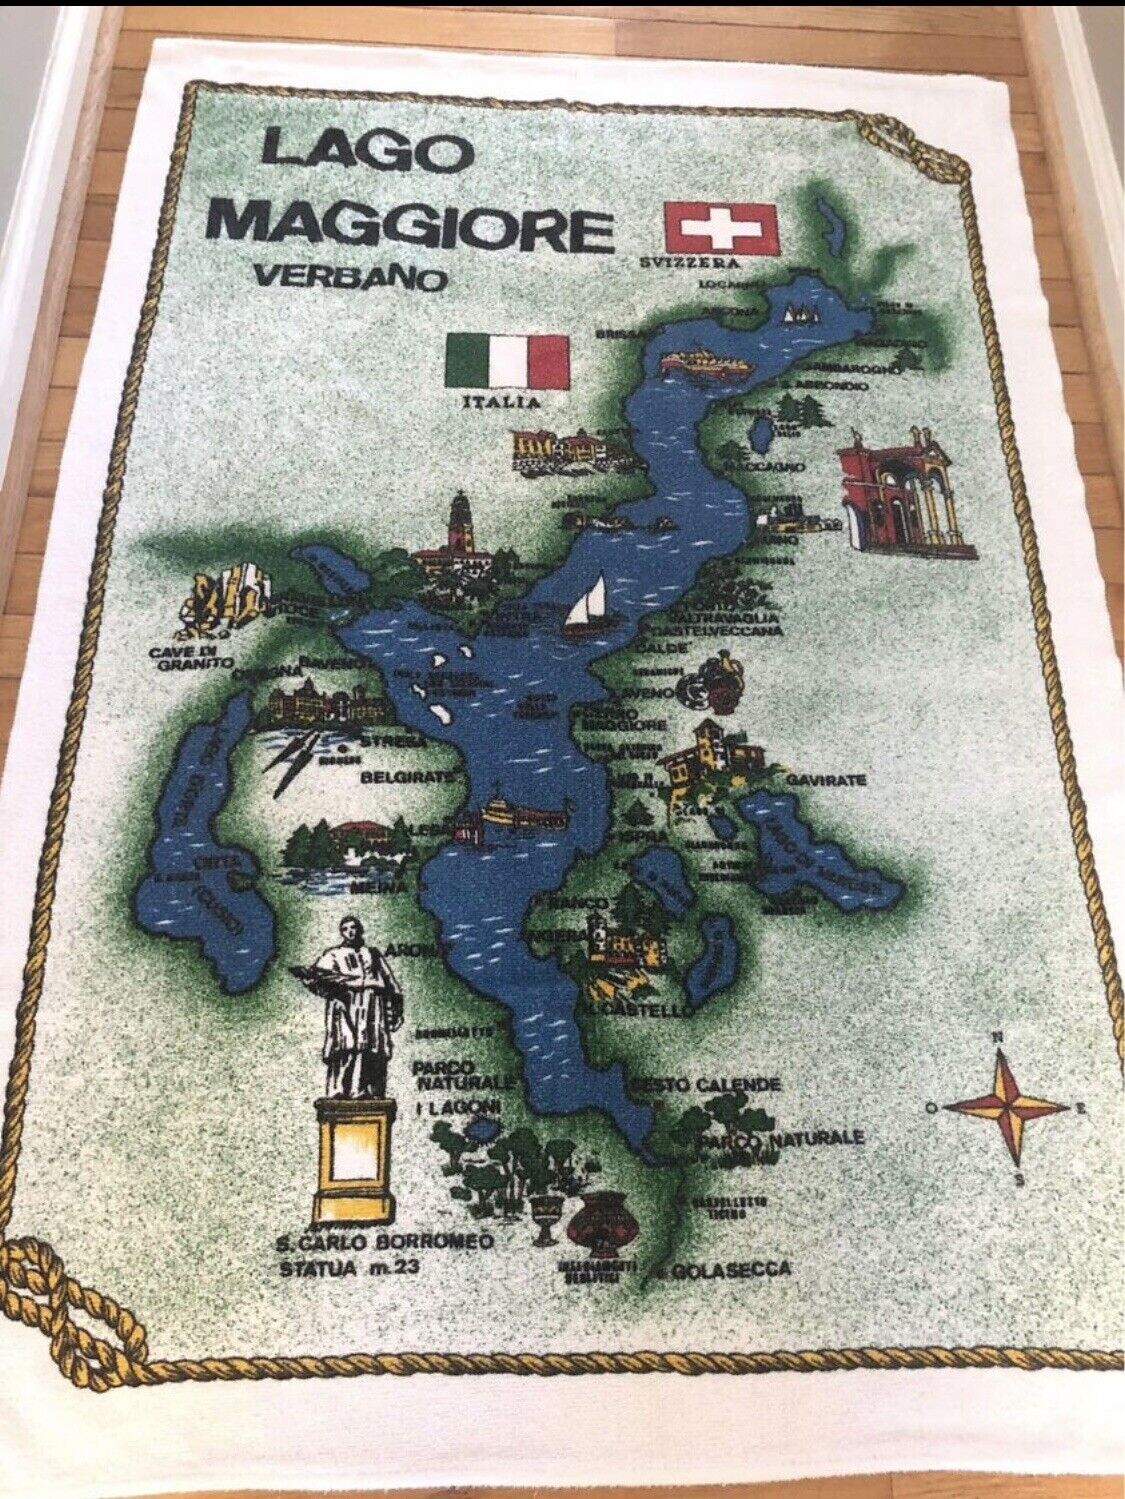 A Vintage Lago Maggiore Beach Towel Italy Map Design Rare 35”x55” Cotton